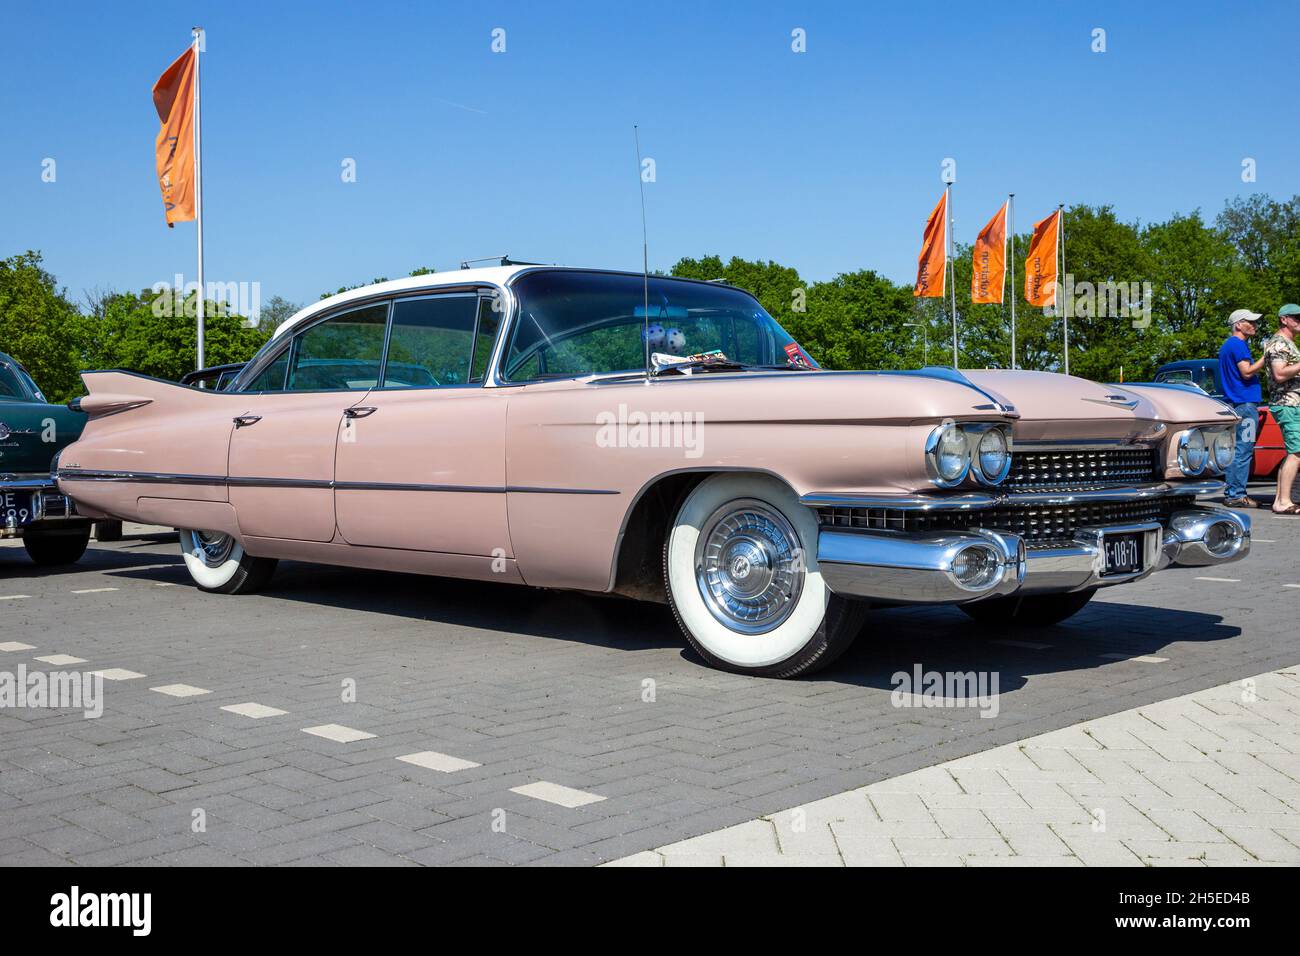 1959 Cadillac Sedan De Ville Oldtimer auf dem Parkplatz. Rosmalen, Niederlande - 8. Mai 2016 Stockfoto